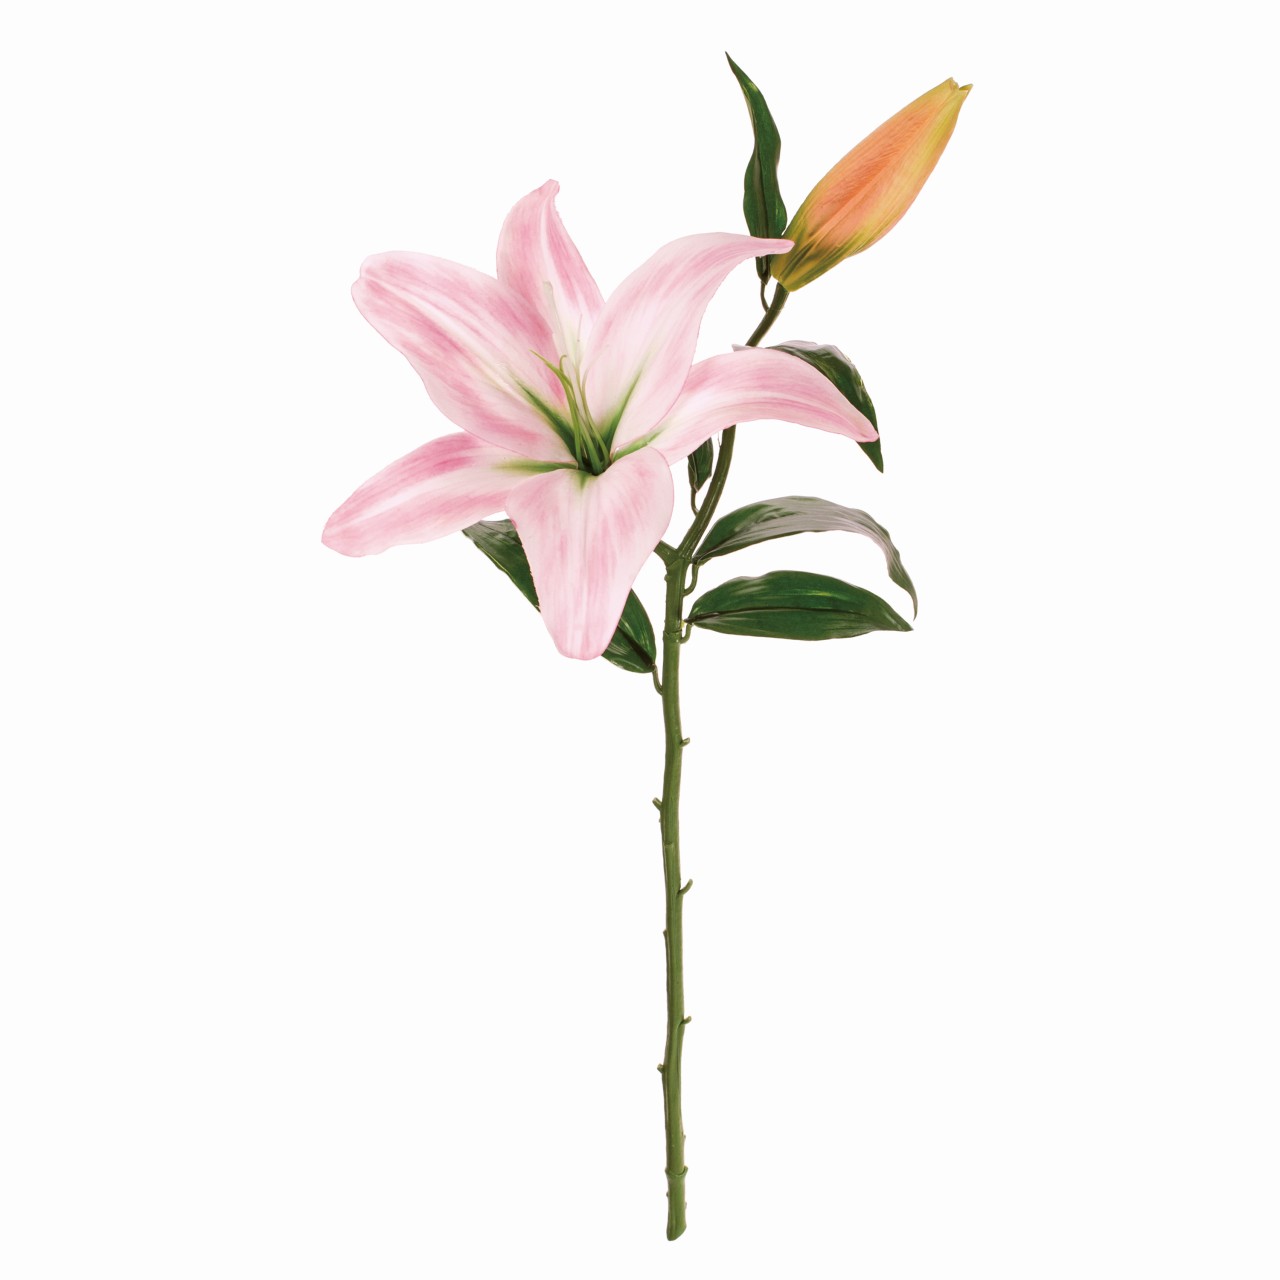 マイフラ 通販 Magiq クイーンカサブランカ ピンク アーティフィシャルフラワー 造花 Fm 002 ユリ カサブランカ ピンク Magiq アーティフィシャルフラワー 造花 全国にmagiq 花器 花資材などをお届けします